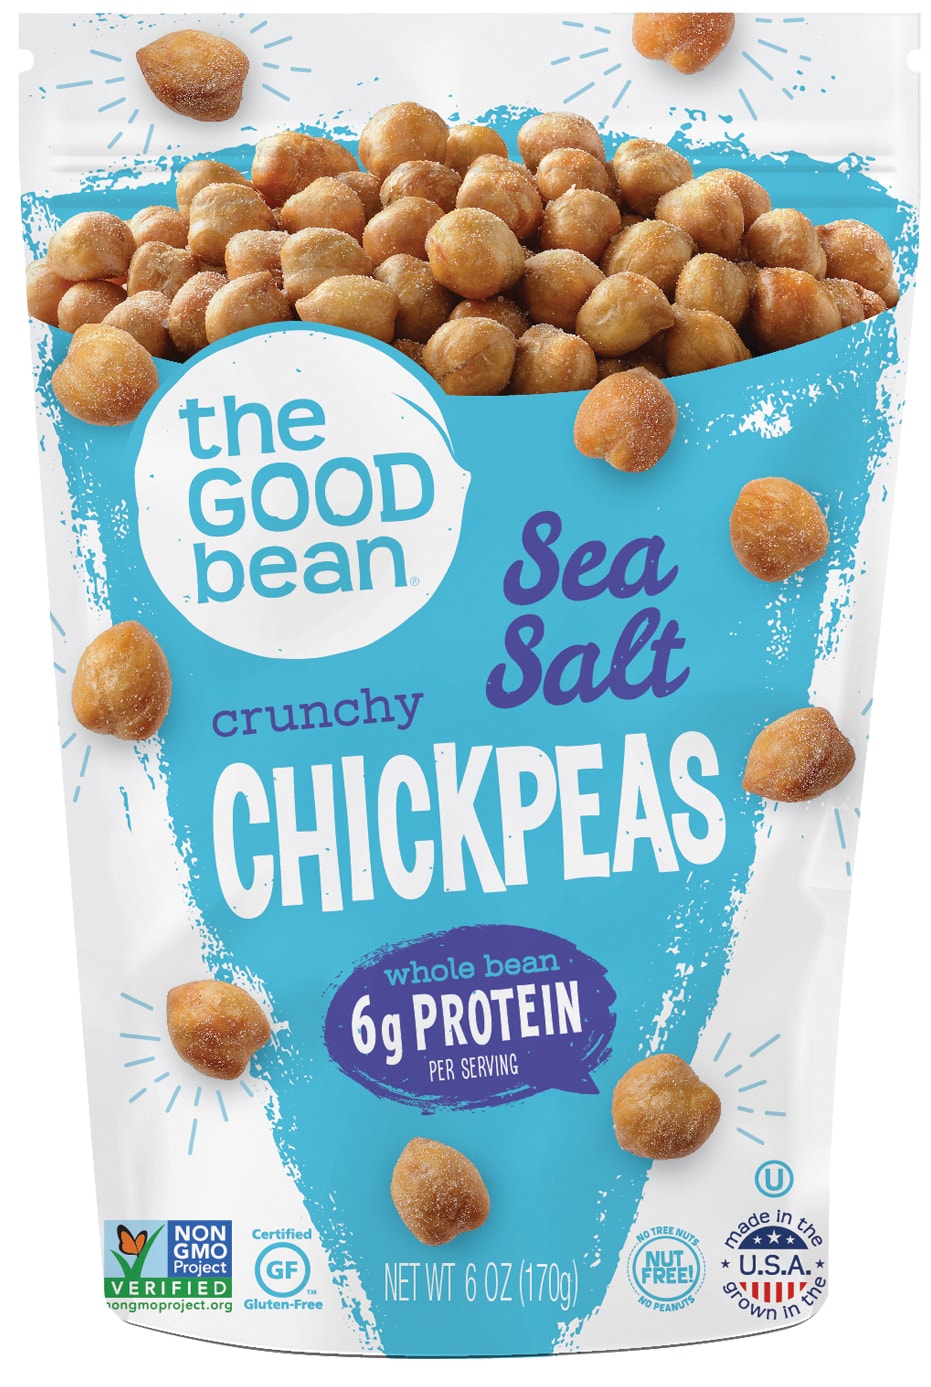 The Good Bean Sea Salt Crunchy Chickpeas